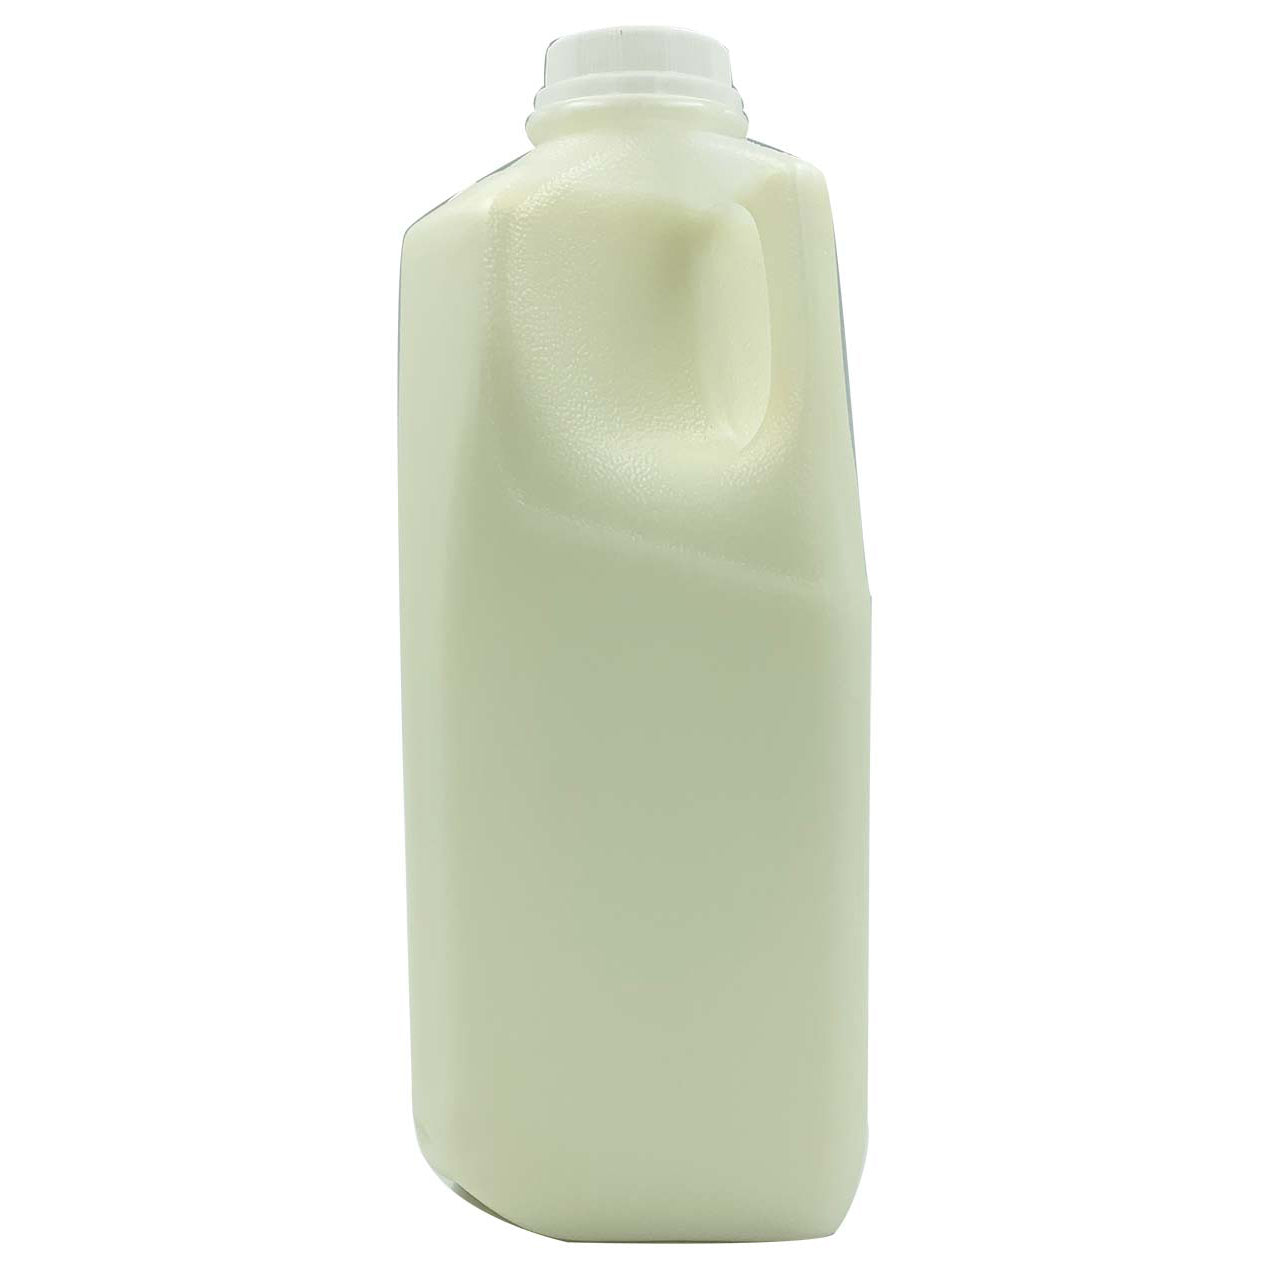 Milk - Grade A Whole A2 White Milk